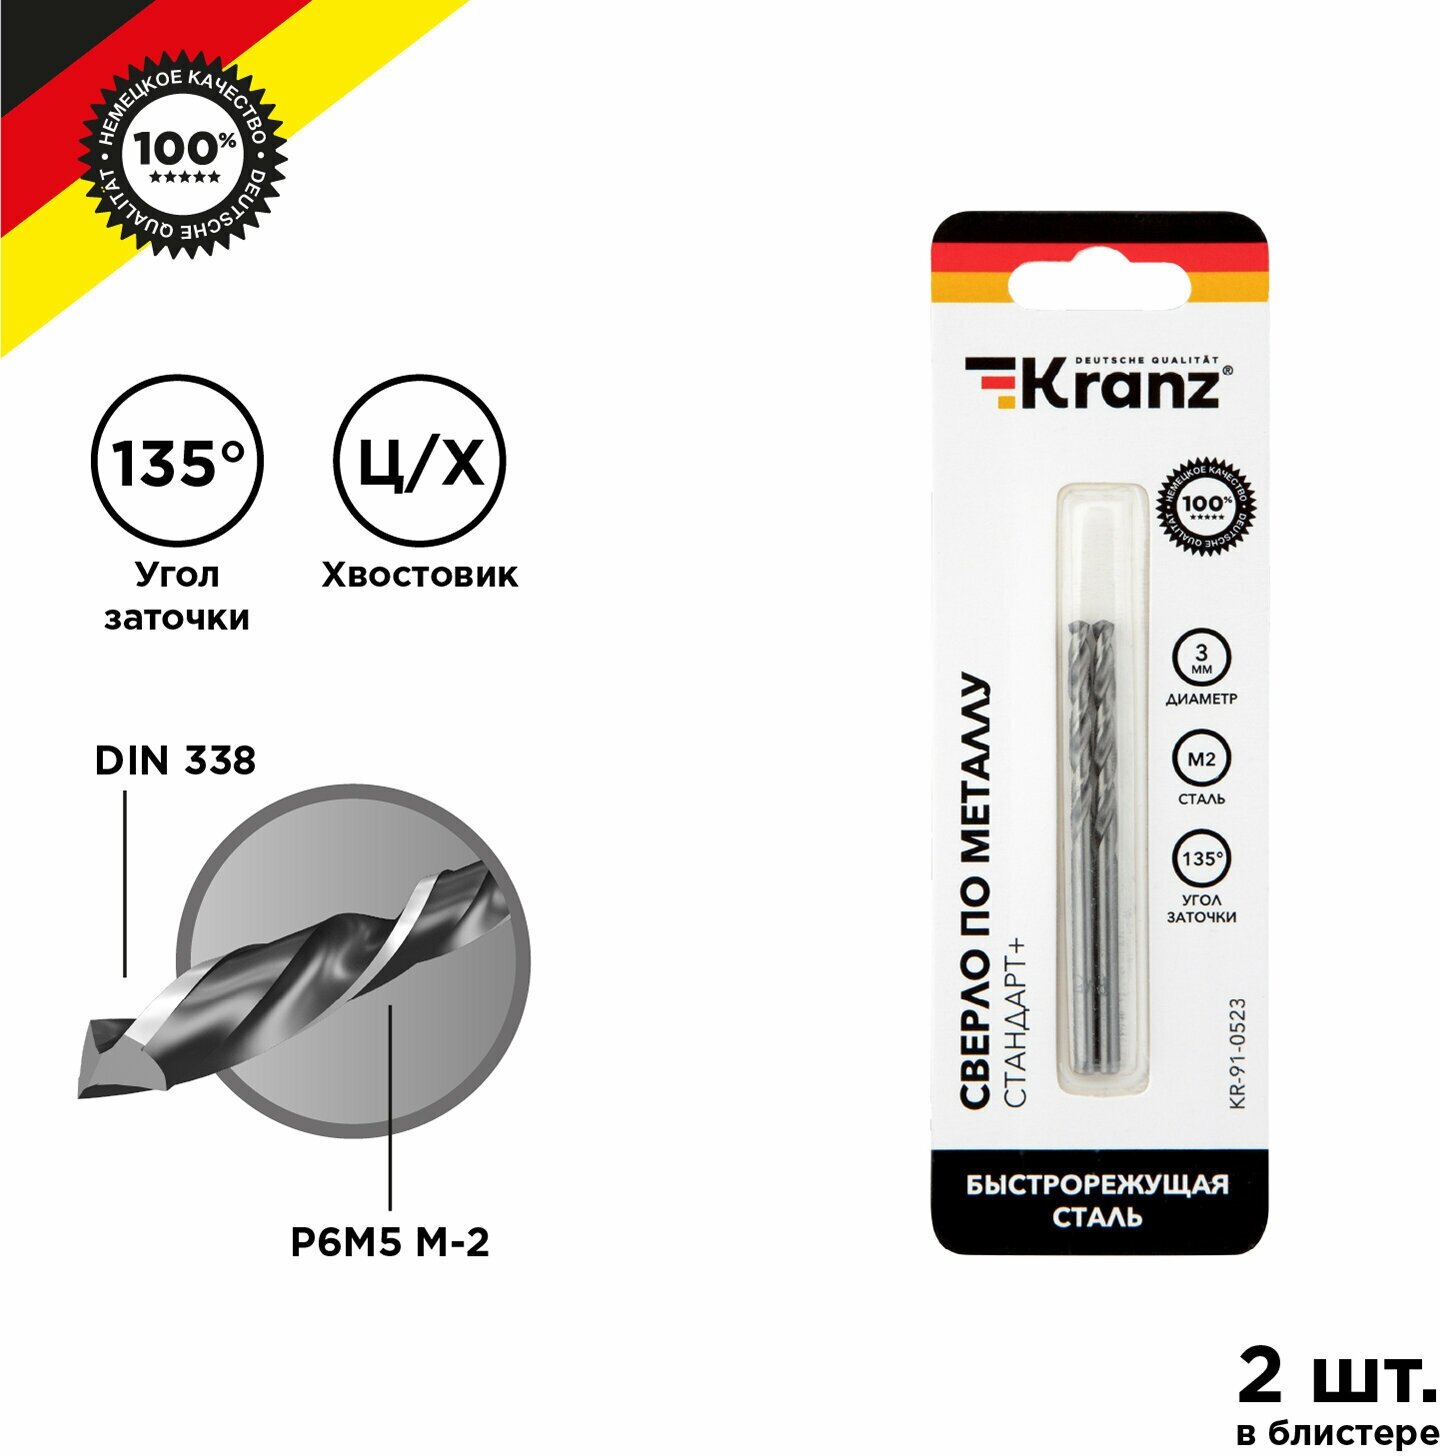 Сверло по металлу KRANZ 3 мм Стандарт+ из быстрорежущей стали P6M5 M-2, в упаковке 2 шт, стандарт DIN 338